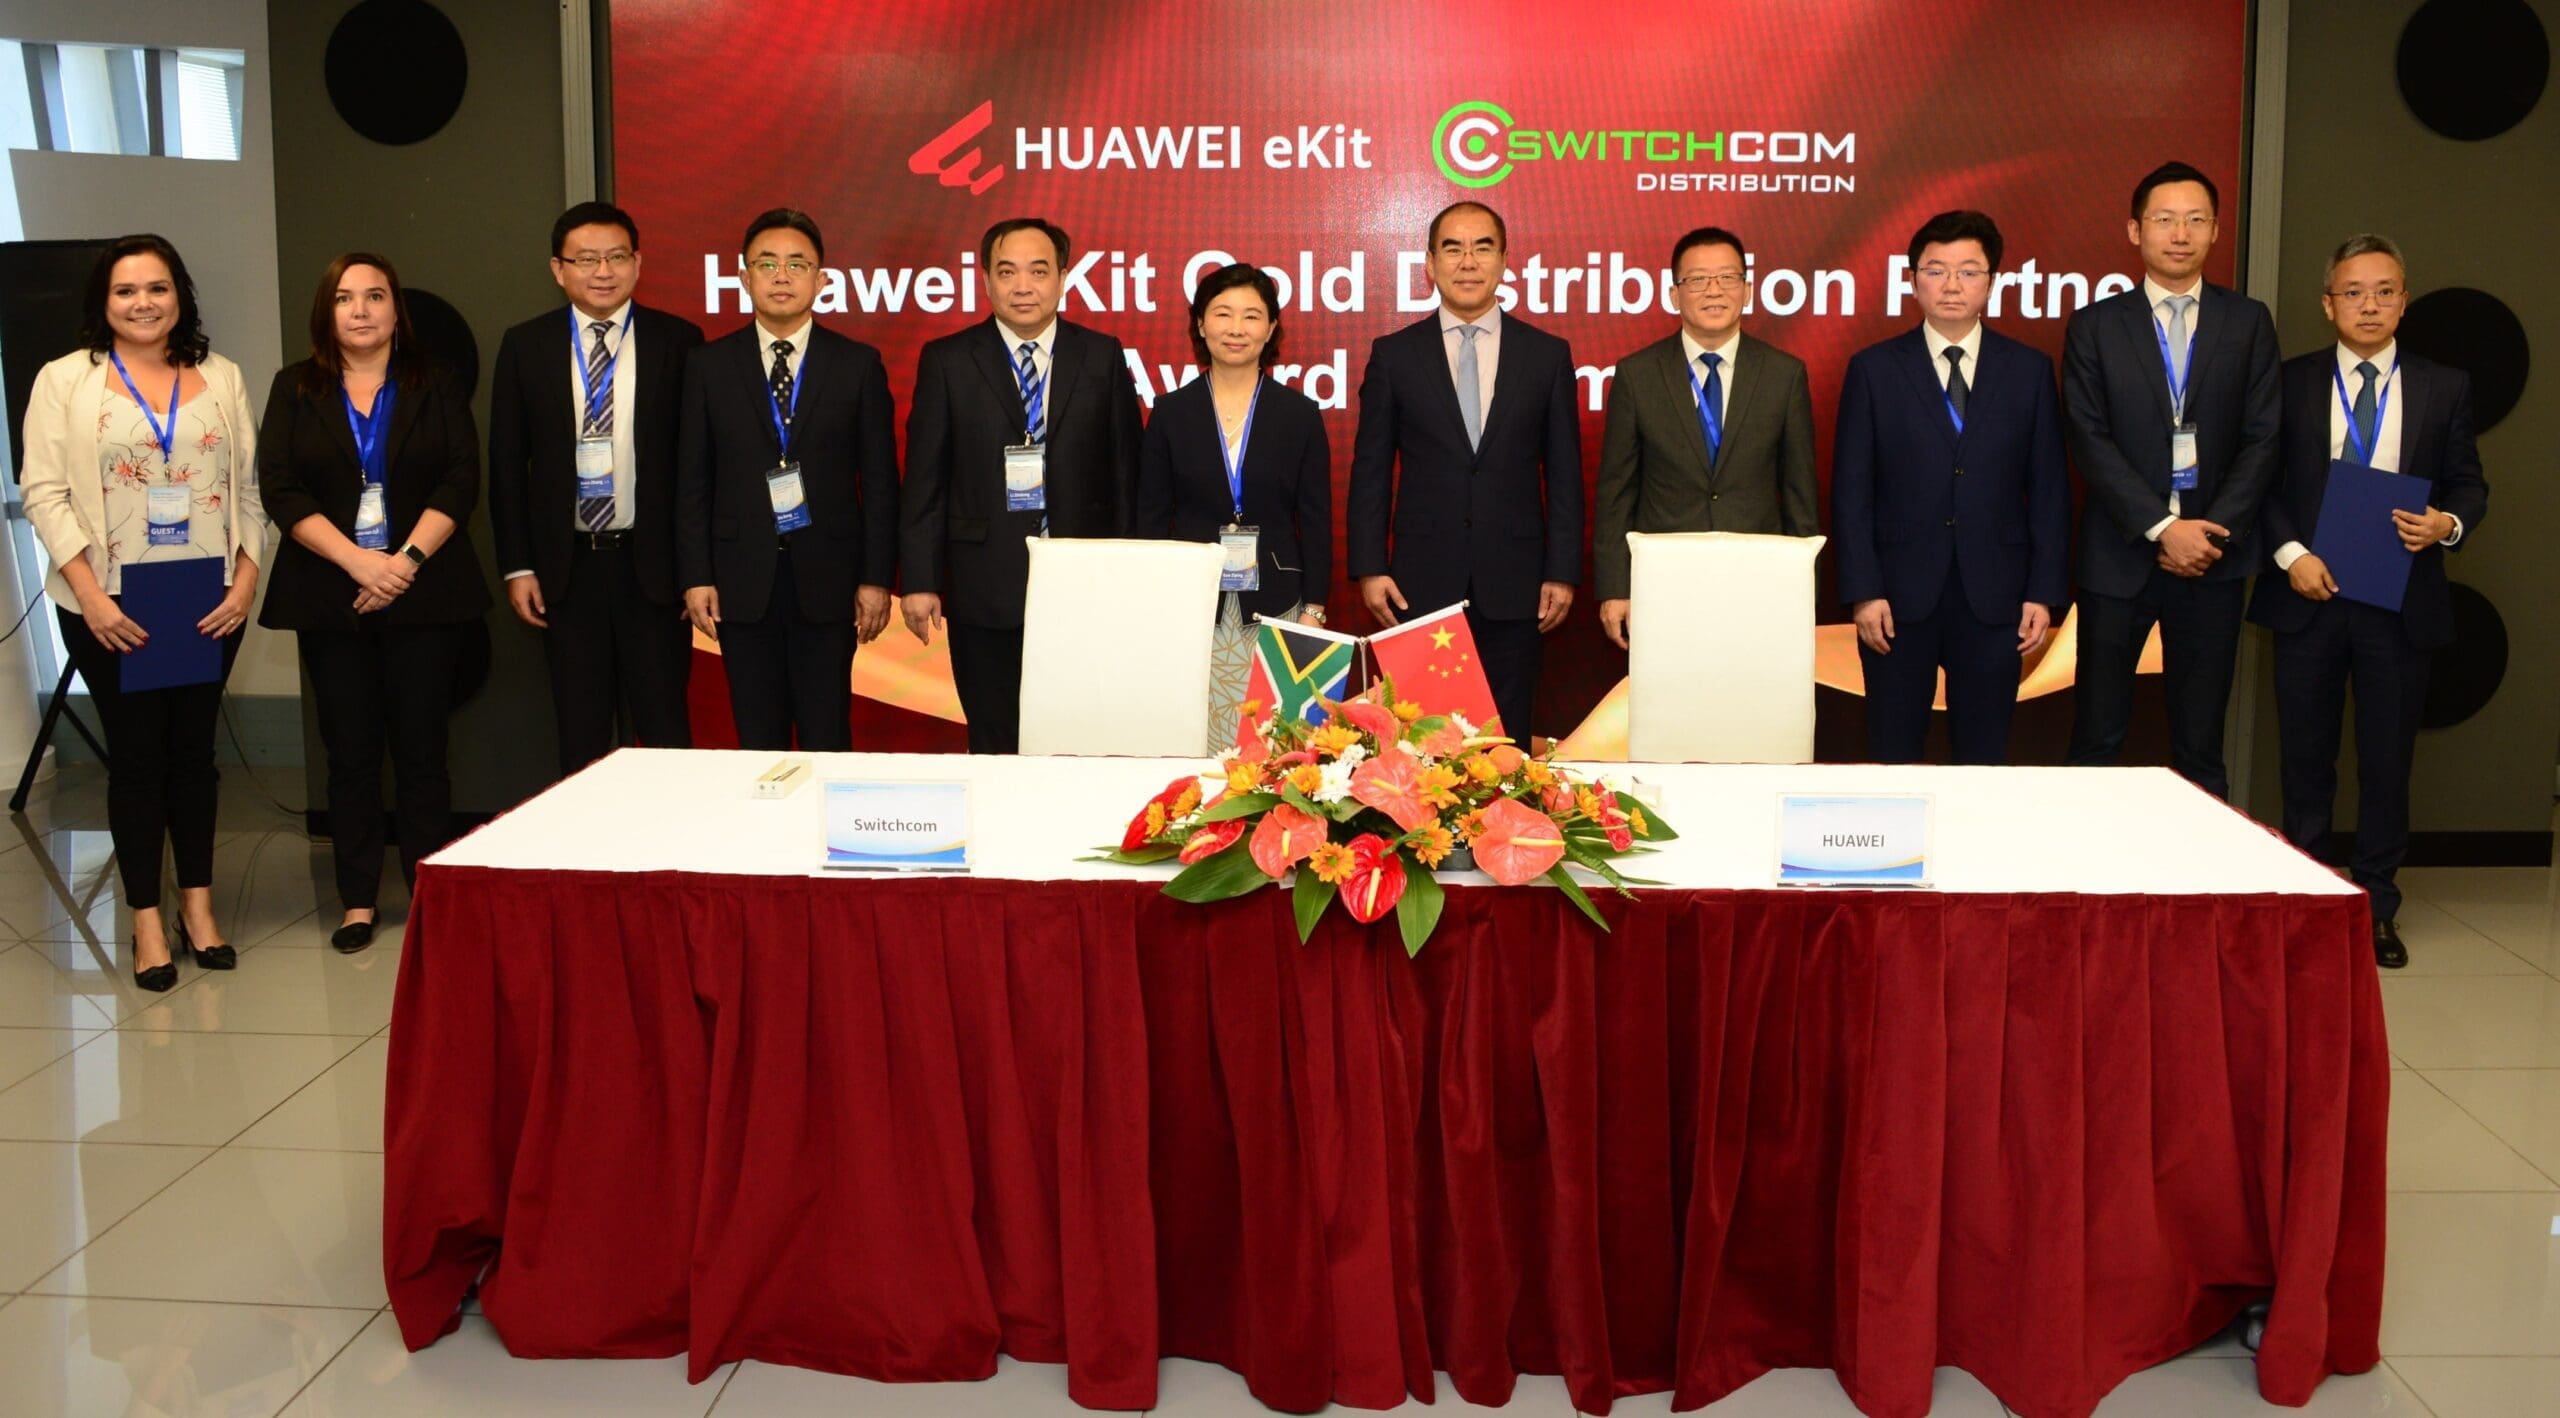 Huawei eKit Gold Distribution Partner award